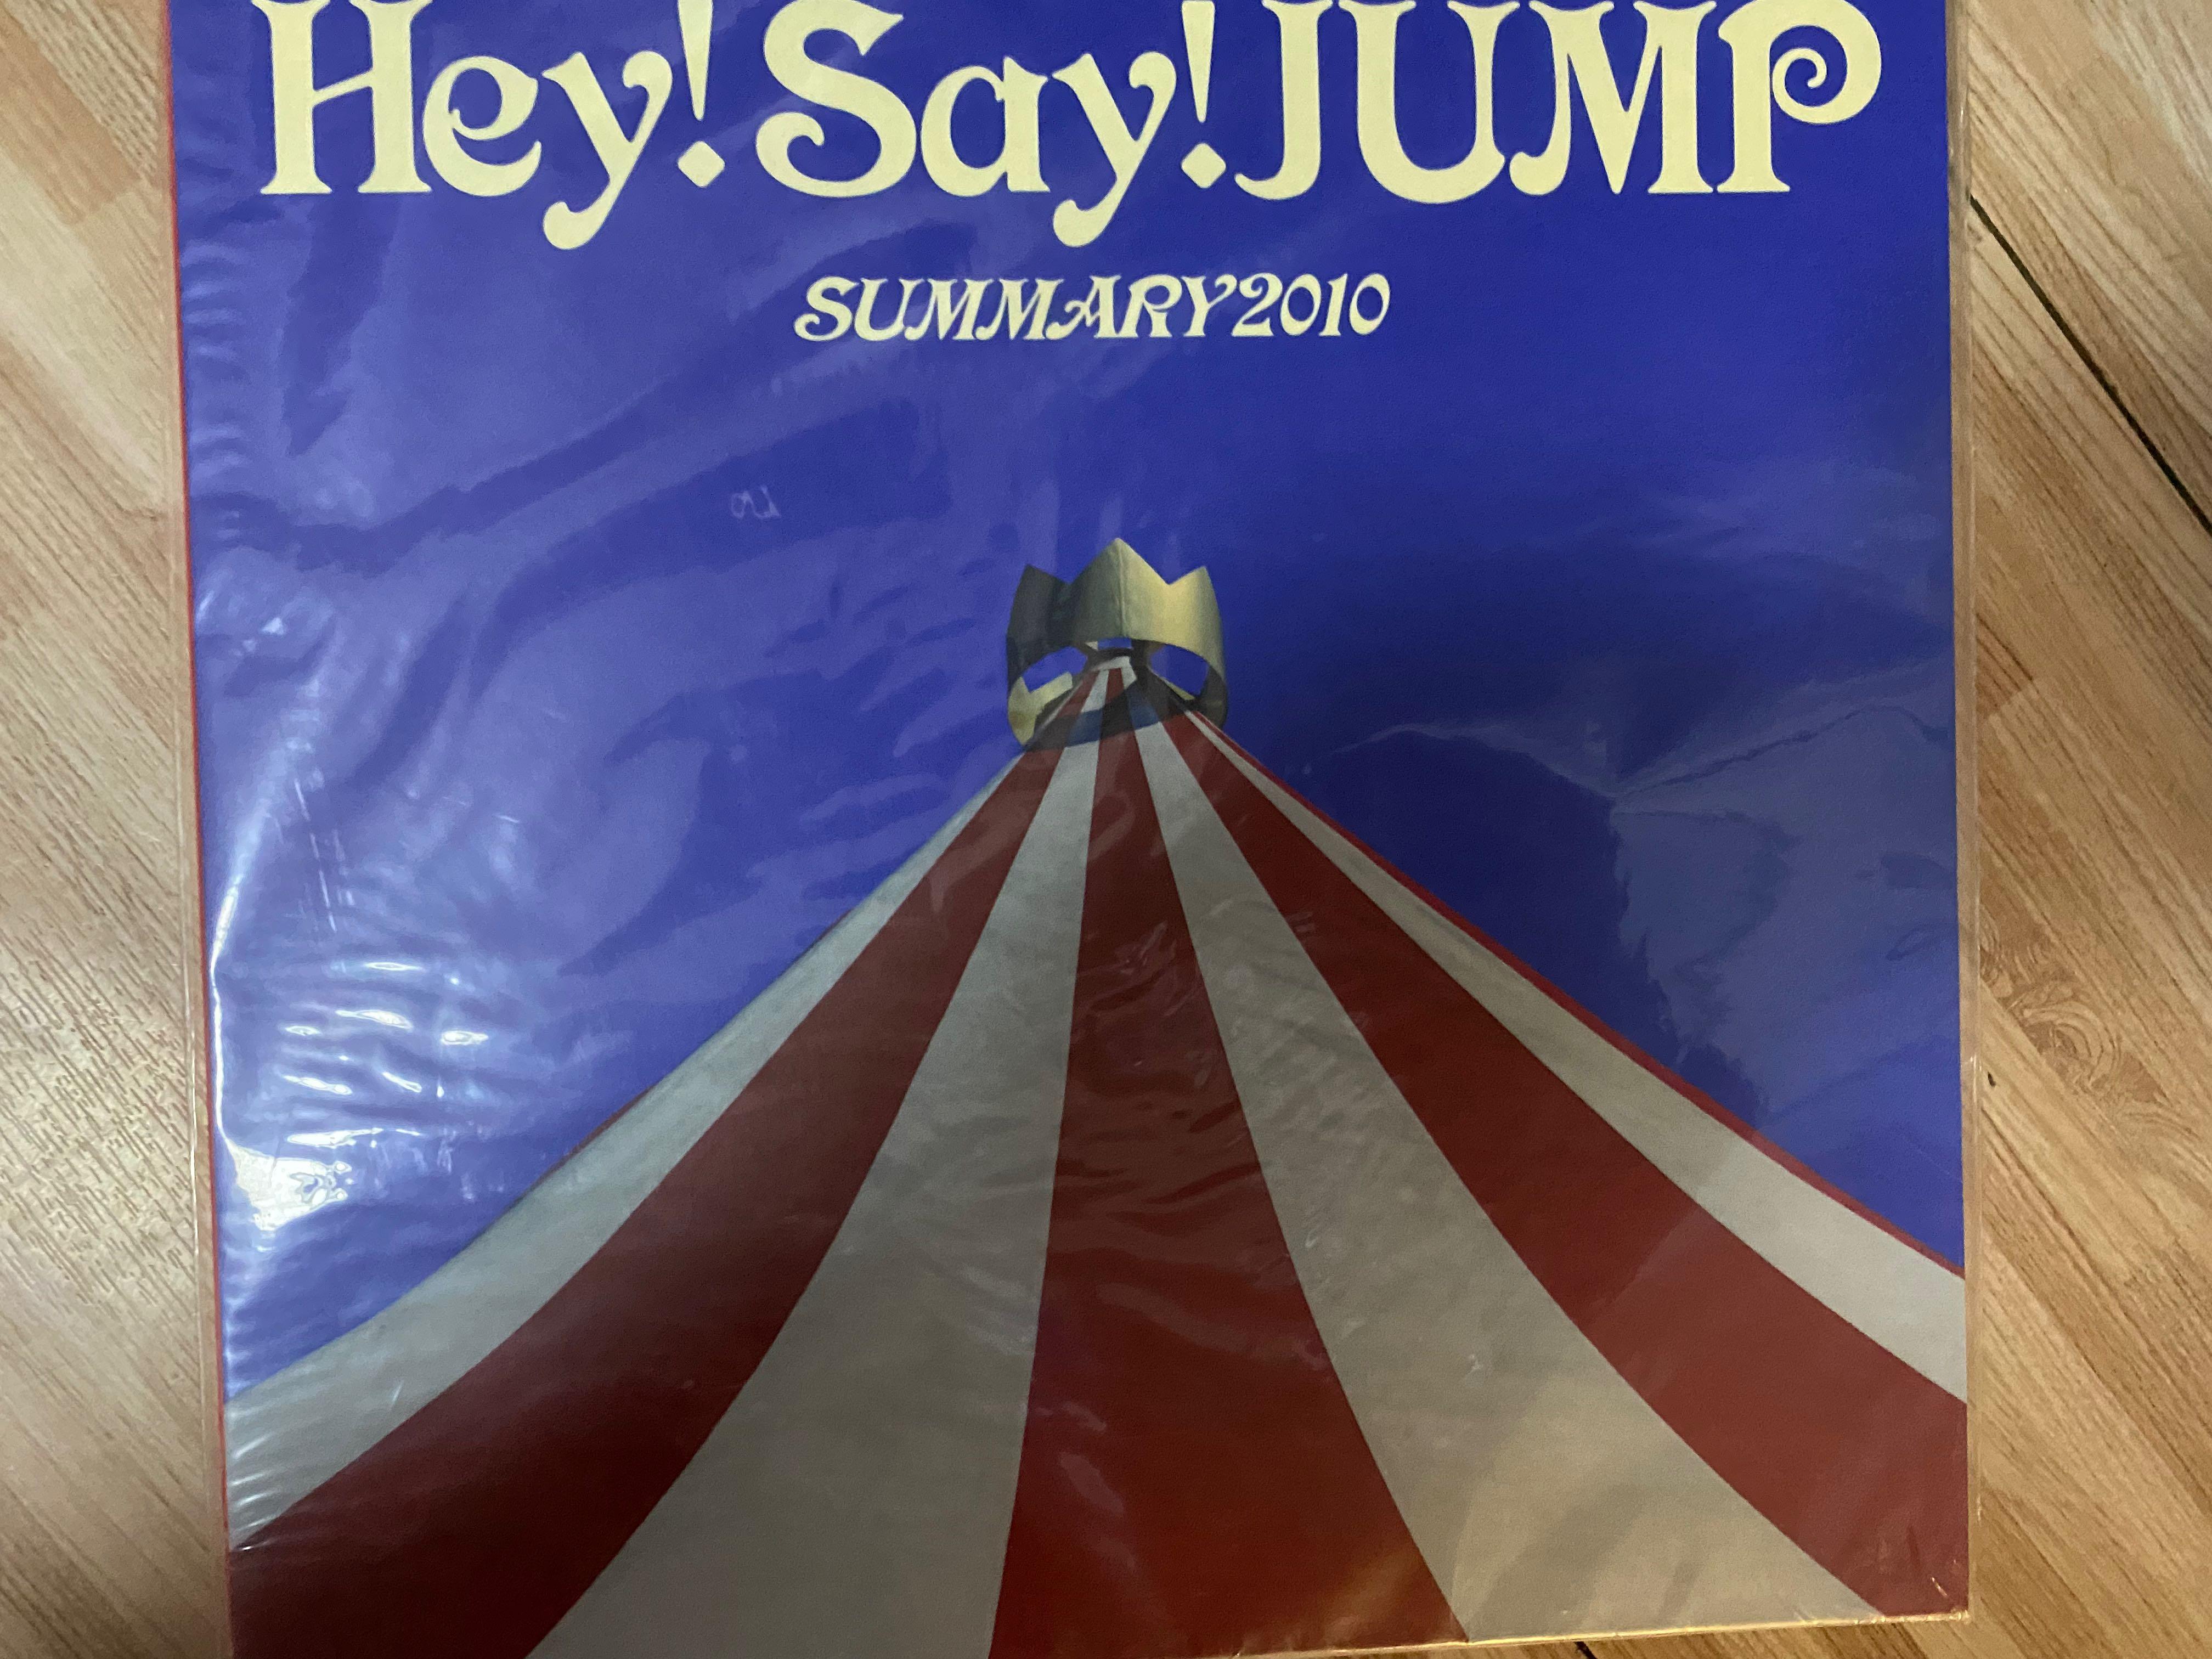 Hey! Say! Jump Summary 場刊, 興趣及遊戲, 收藏品及紀念品, 日本明星